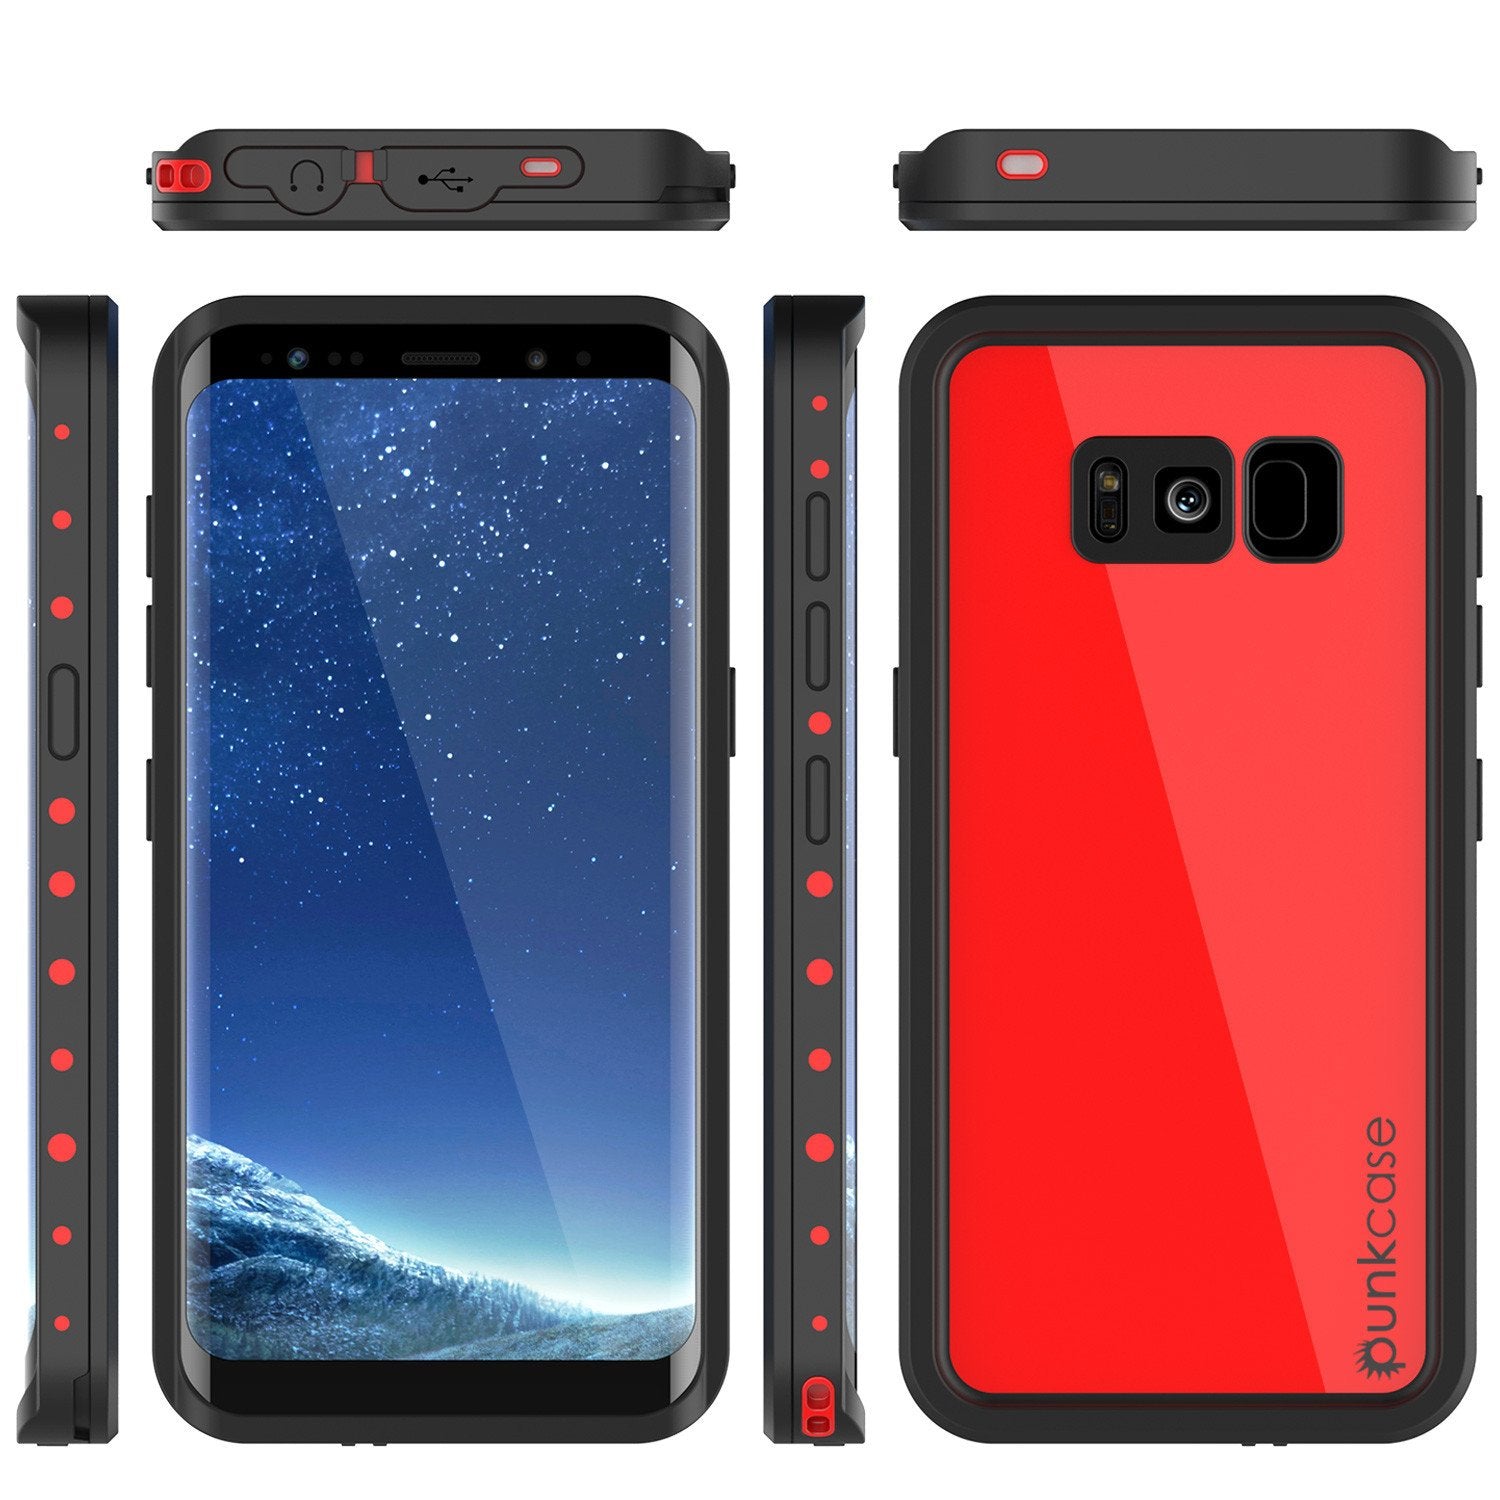 Galaxy S8 waterproof Case, Punkcase [StudStar Series] Slim Fit, RED